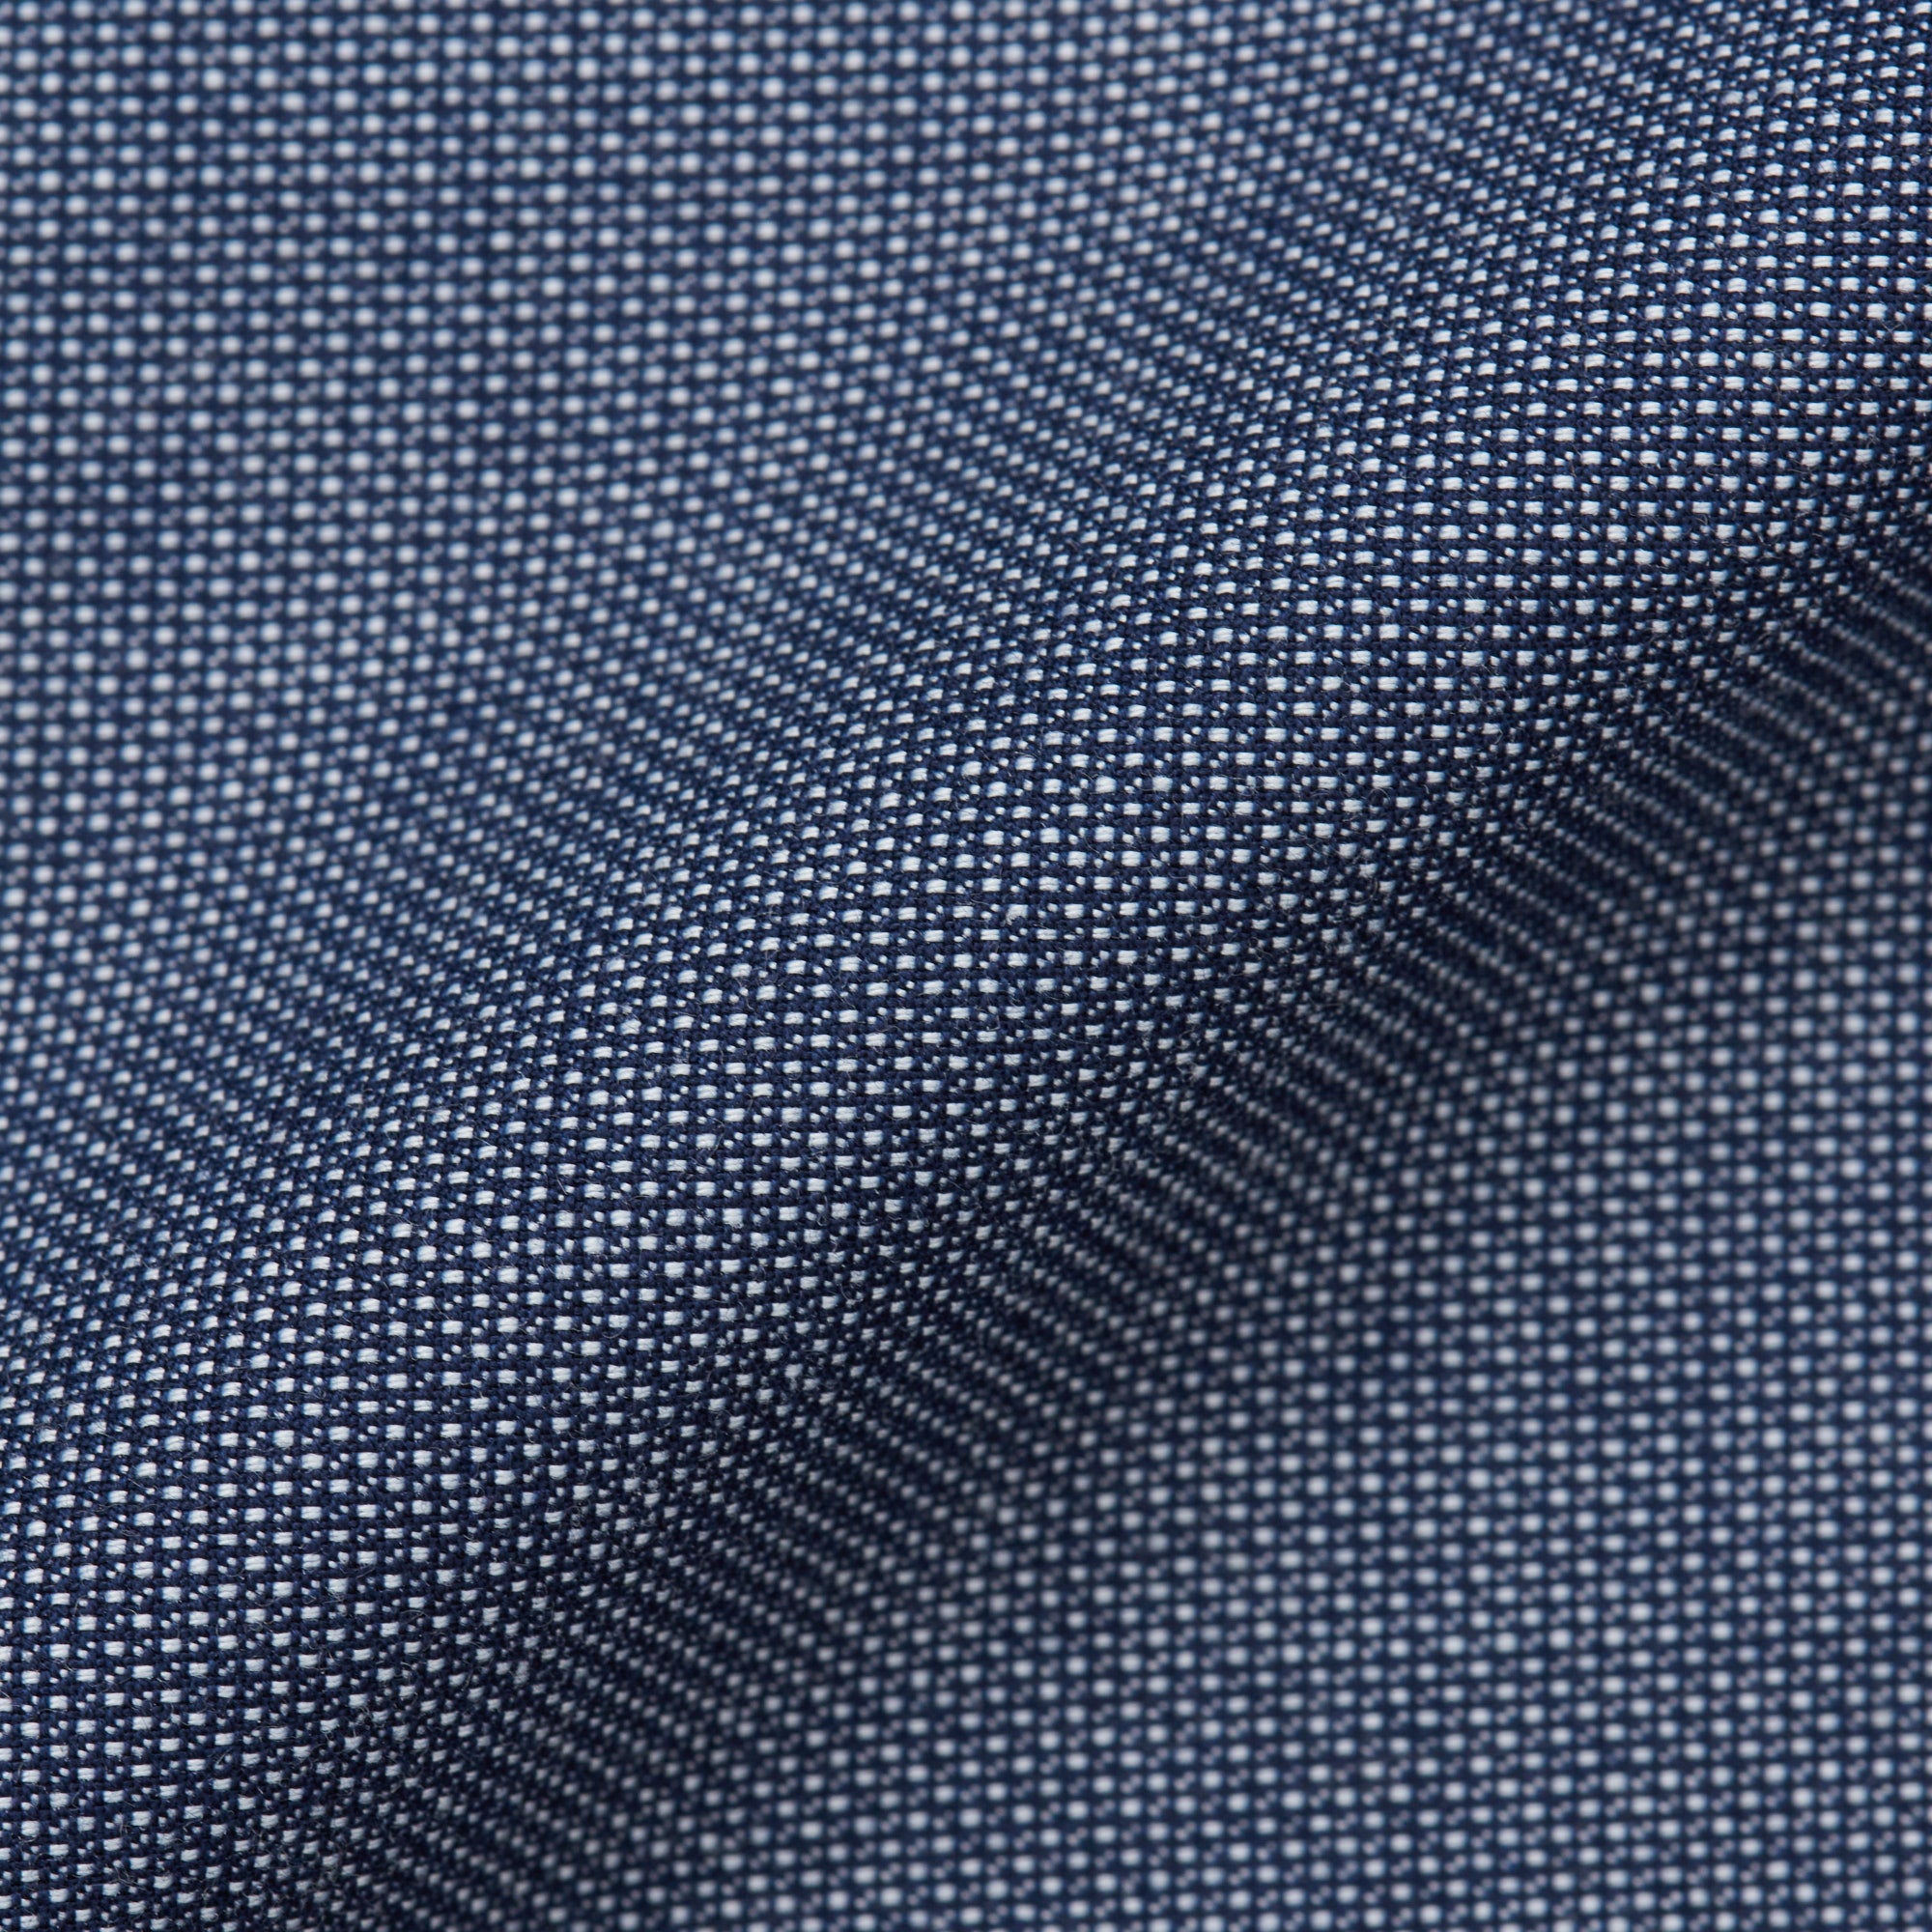 VINCENZO PALUMBO Napoli Blue Wool Suit Business EU 46 NEW US 34 VINCENZO PALUMBO